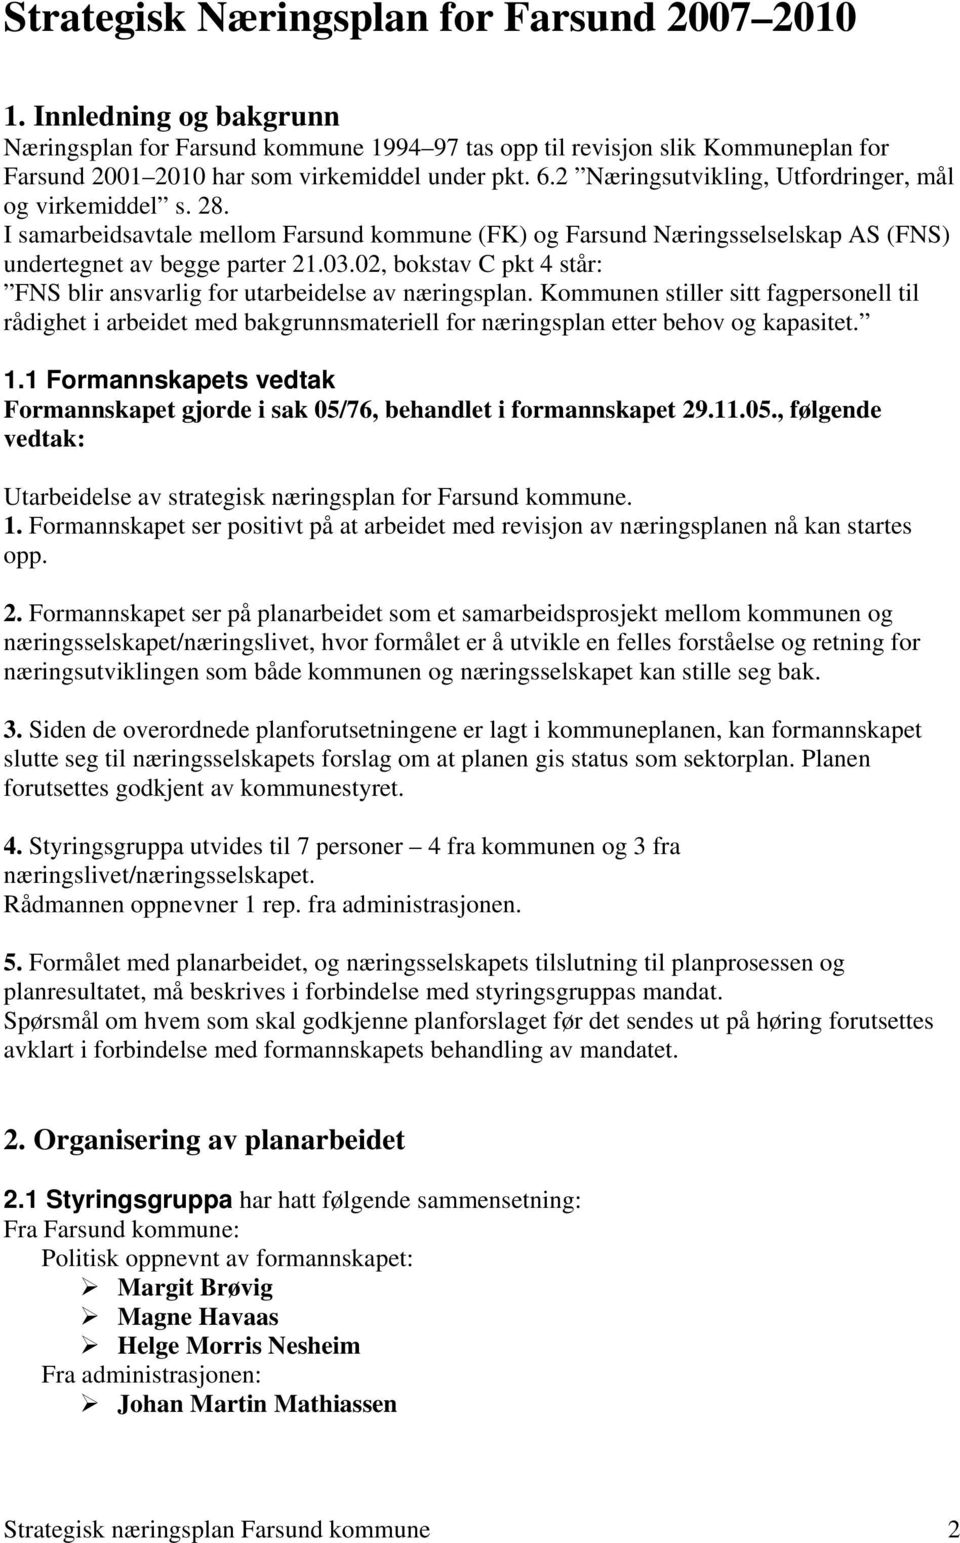 2 Næringsutvikling, Utfordringer, mål og virkemiddel s. 28. I samarbeidsavtale mellom Farsund kommune (FK) og Farsund Næringsselselskap AS (FNS) undertegnet av begge parter 21.03.